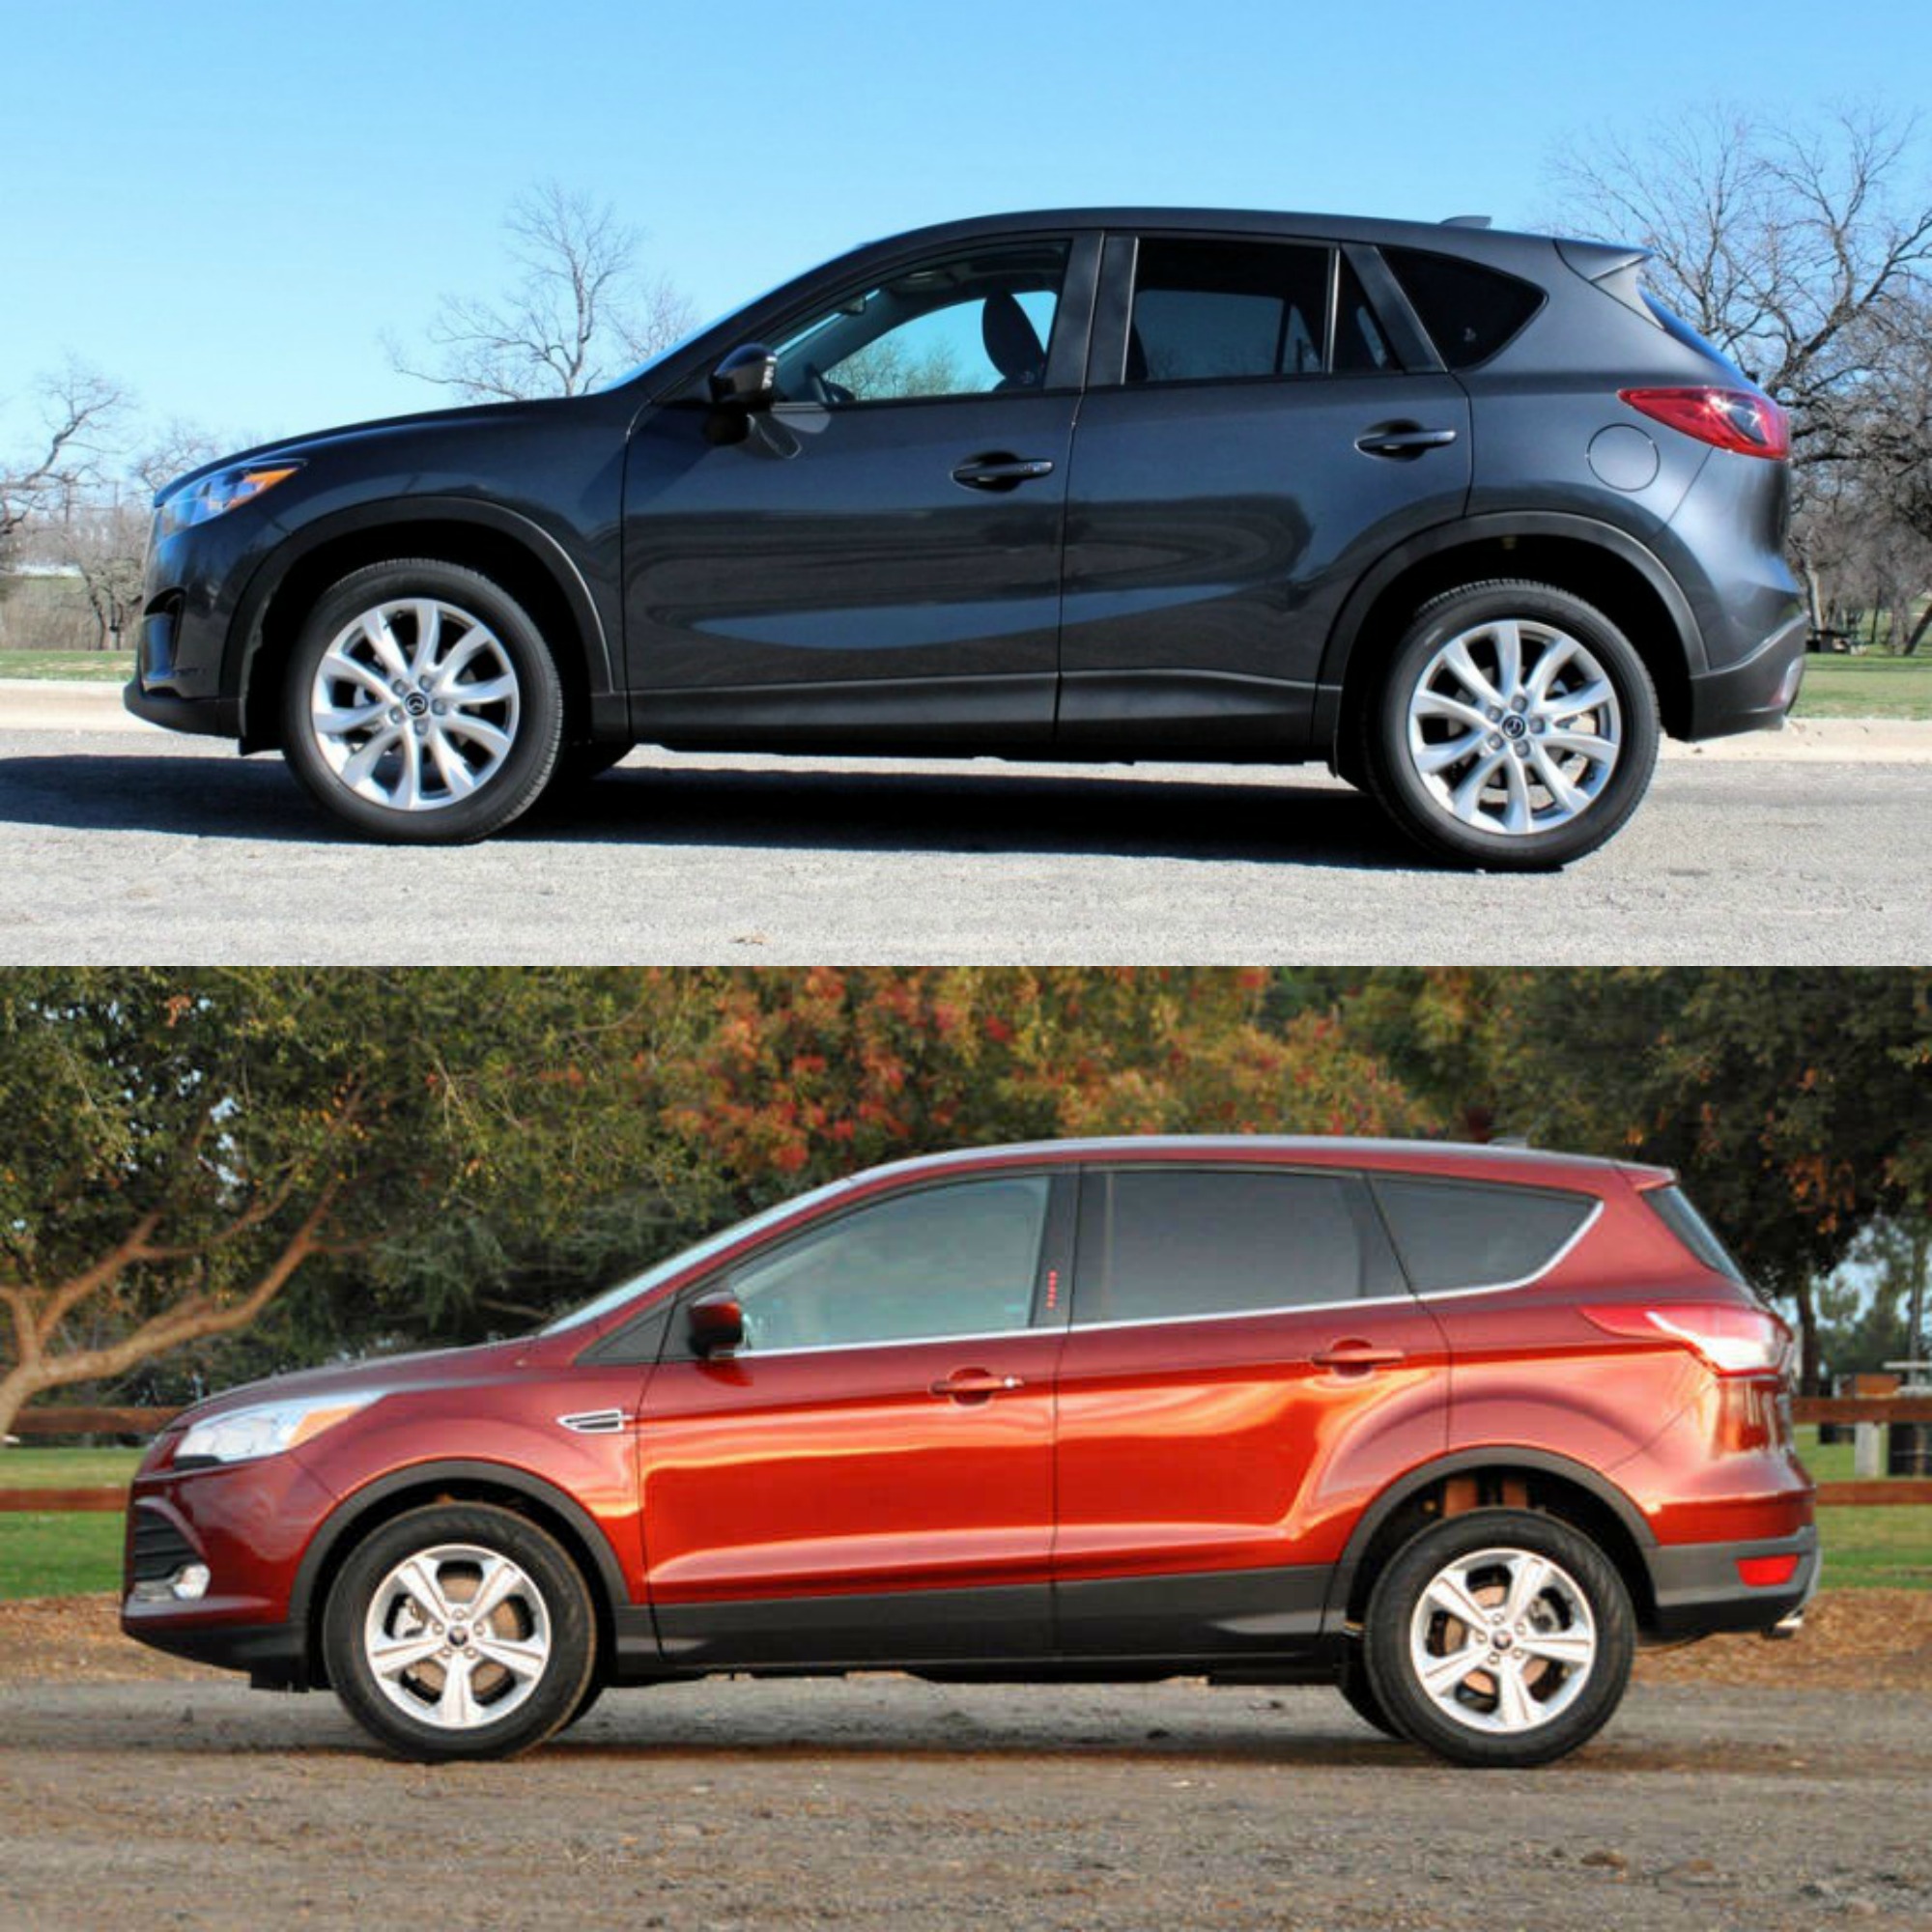 Khi so sánh ô tô, cả 2 phiên bản Mazda CX-5 và Ford Escape đều có những cải tiến nhất định